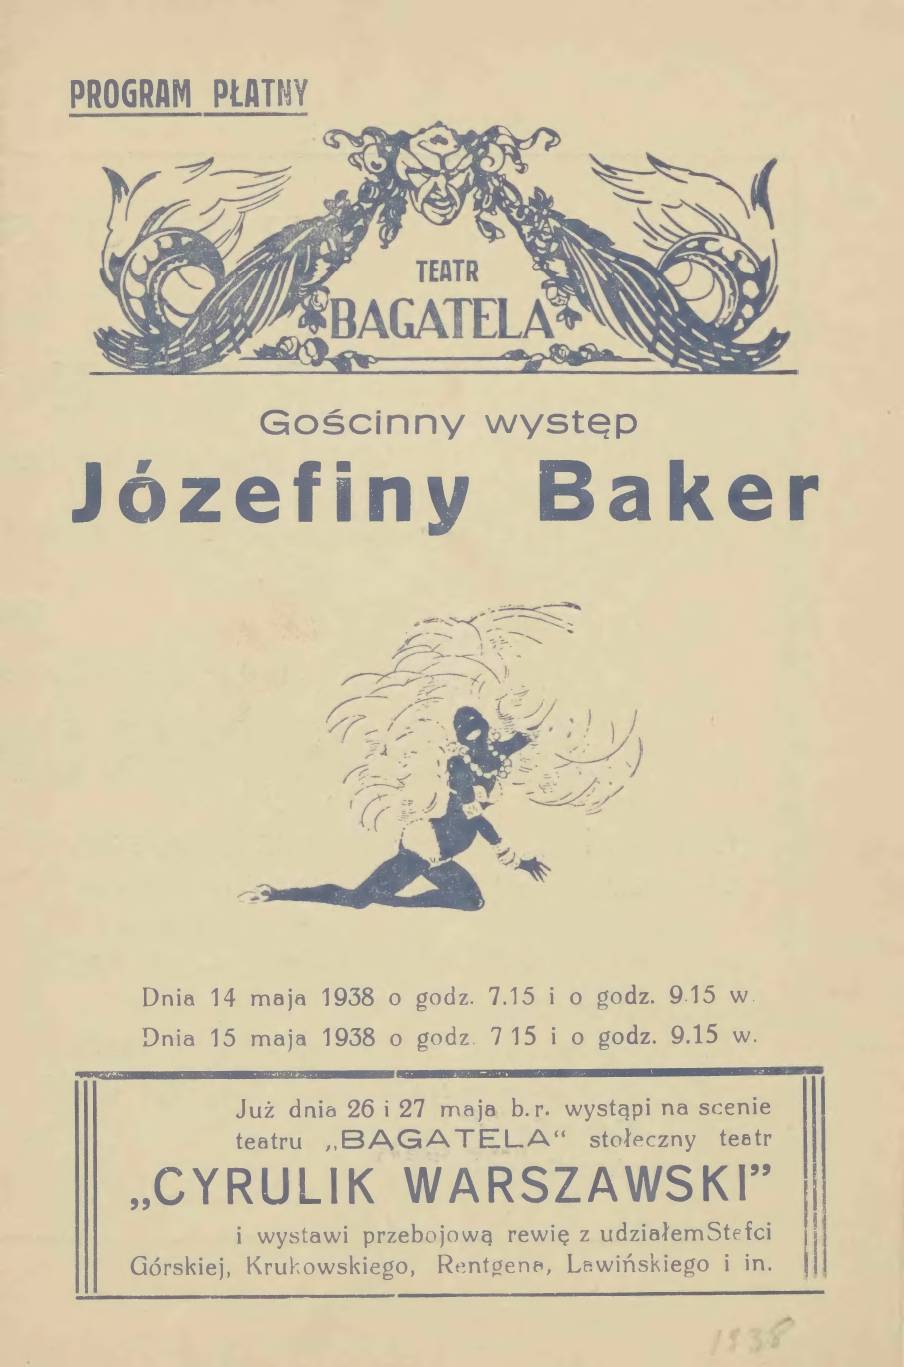 Zapowiedź występu Josephine Baker w Teatrze Bagatela w Krakowie, 1938 (Mazowiecka Biblioteka Cyfrowa)